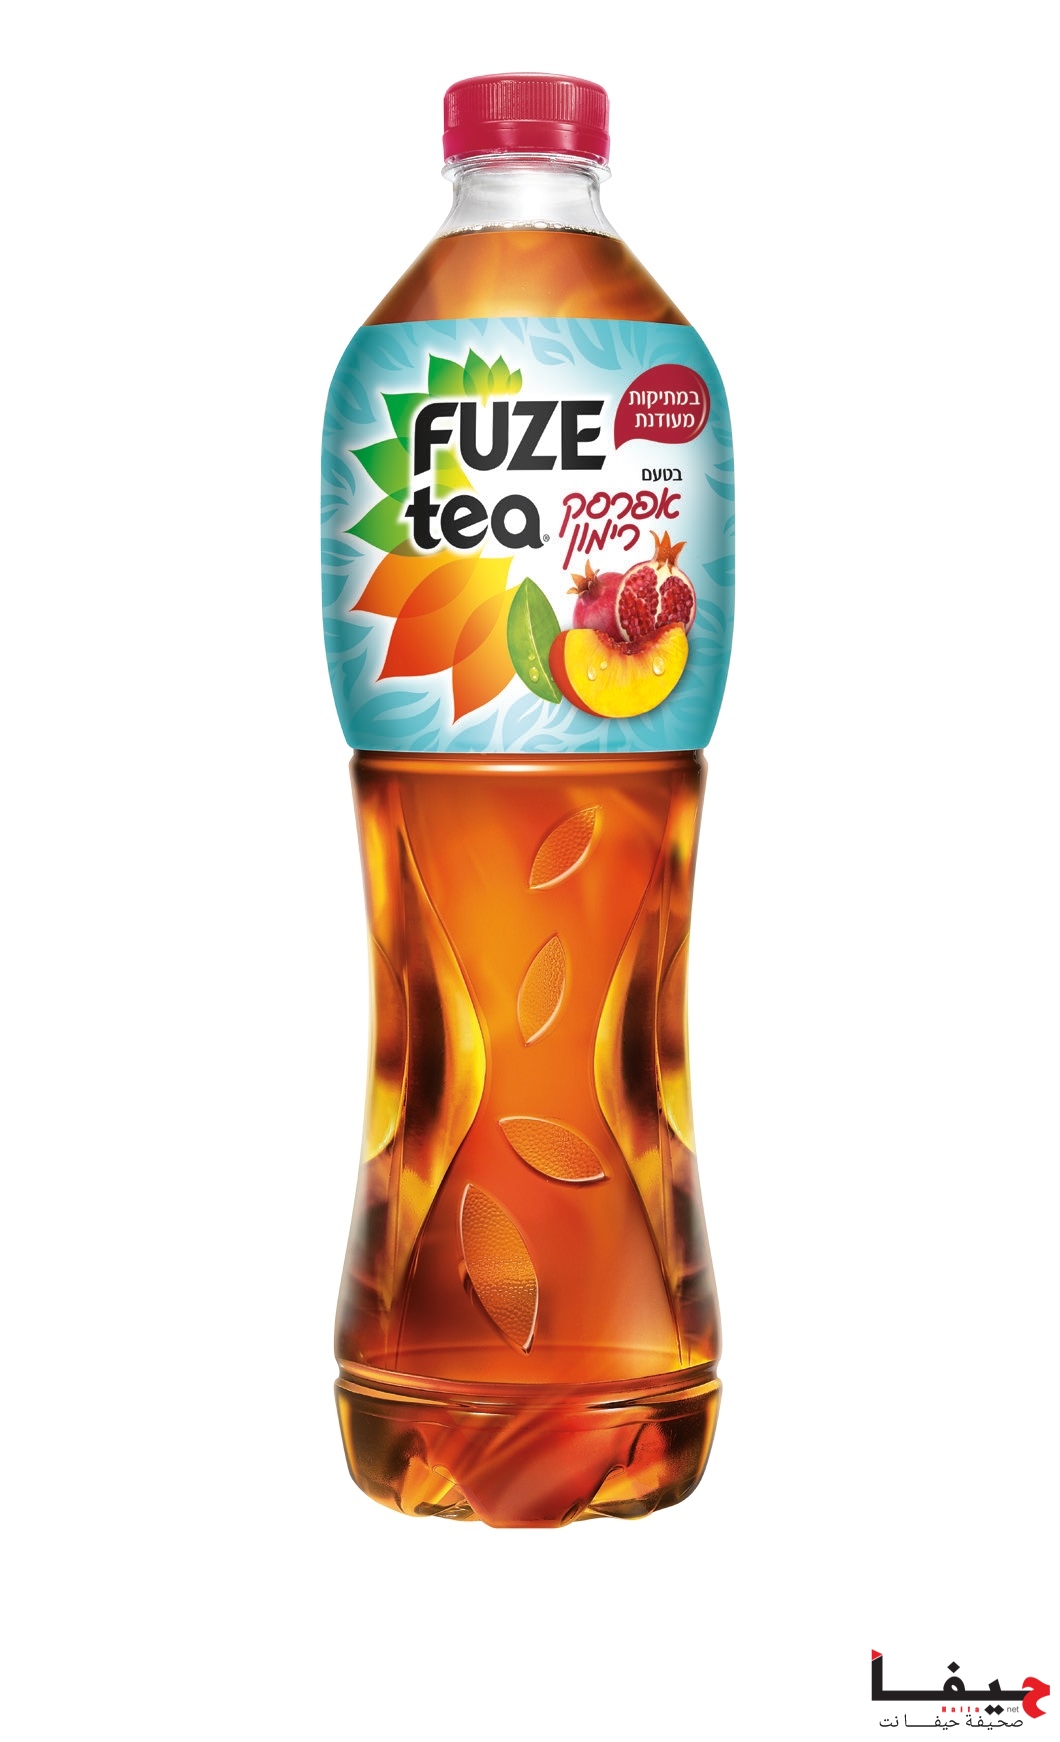 ماركة الشاي البارد Fuze-tea تُطلق مشروبا جديدا